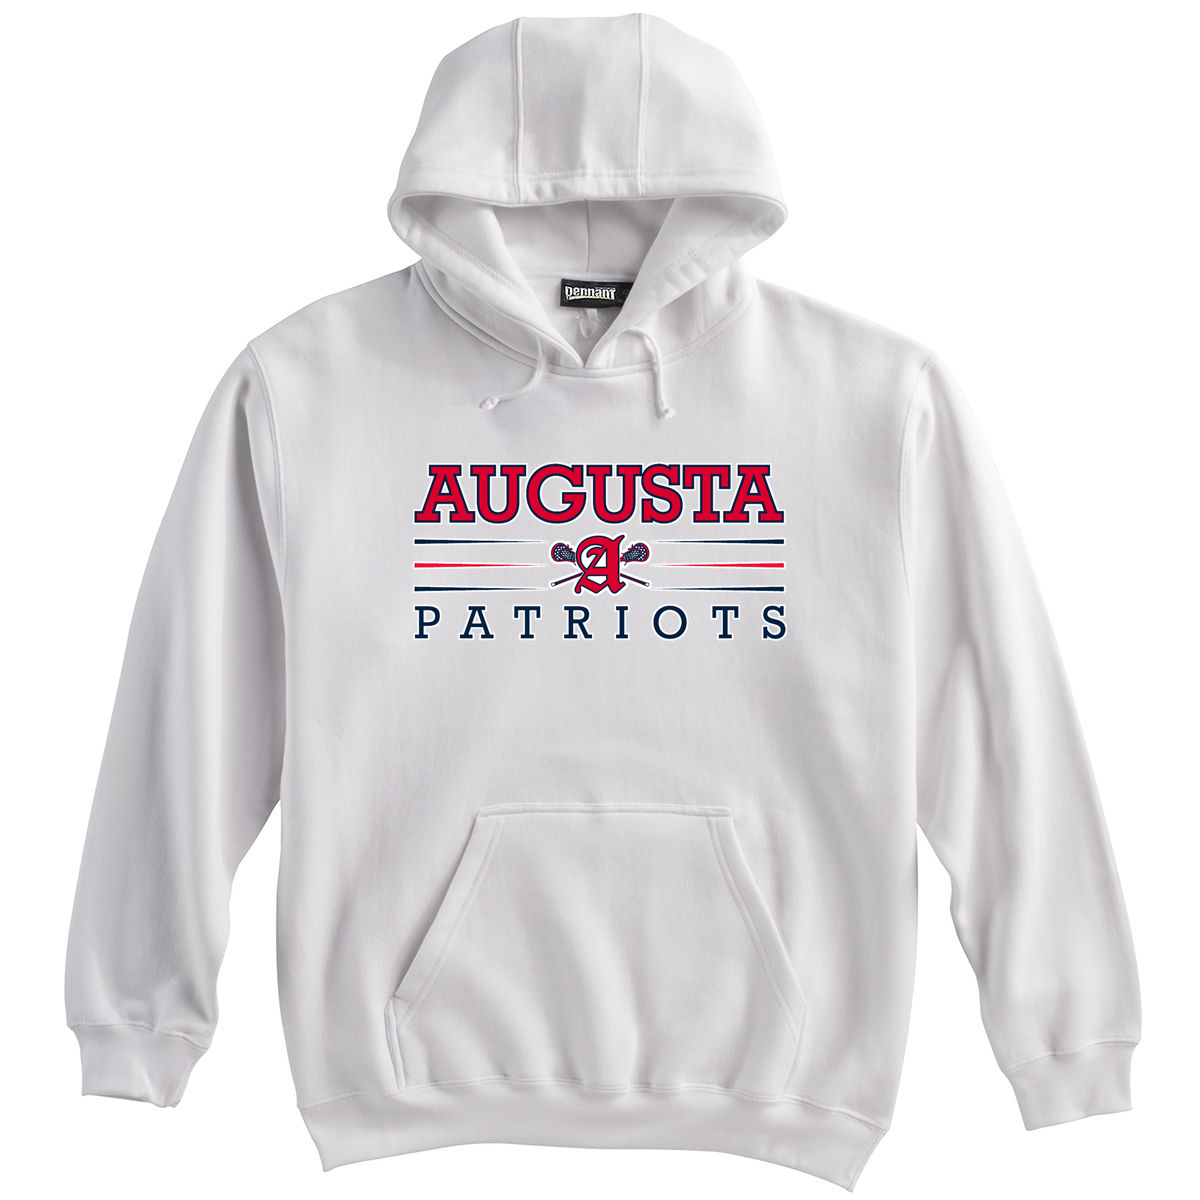 Augusta Patriots White Sweatshirt